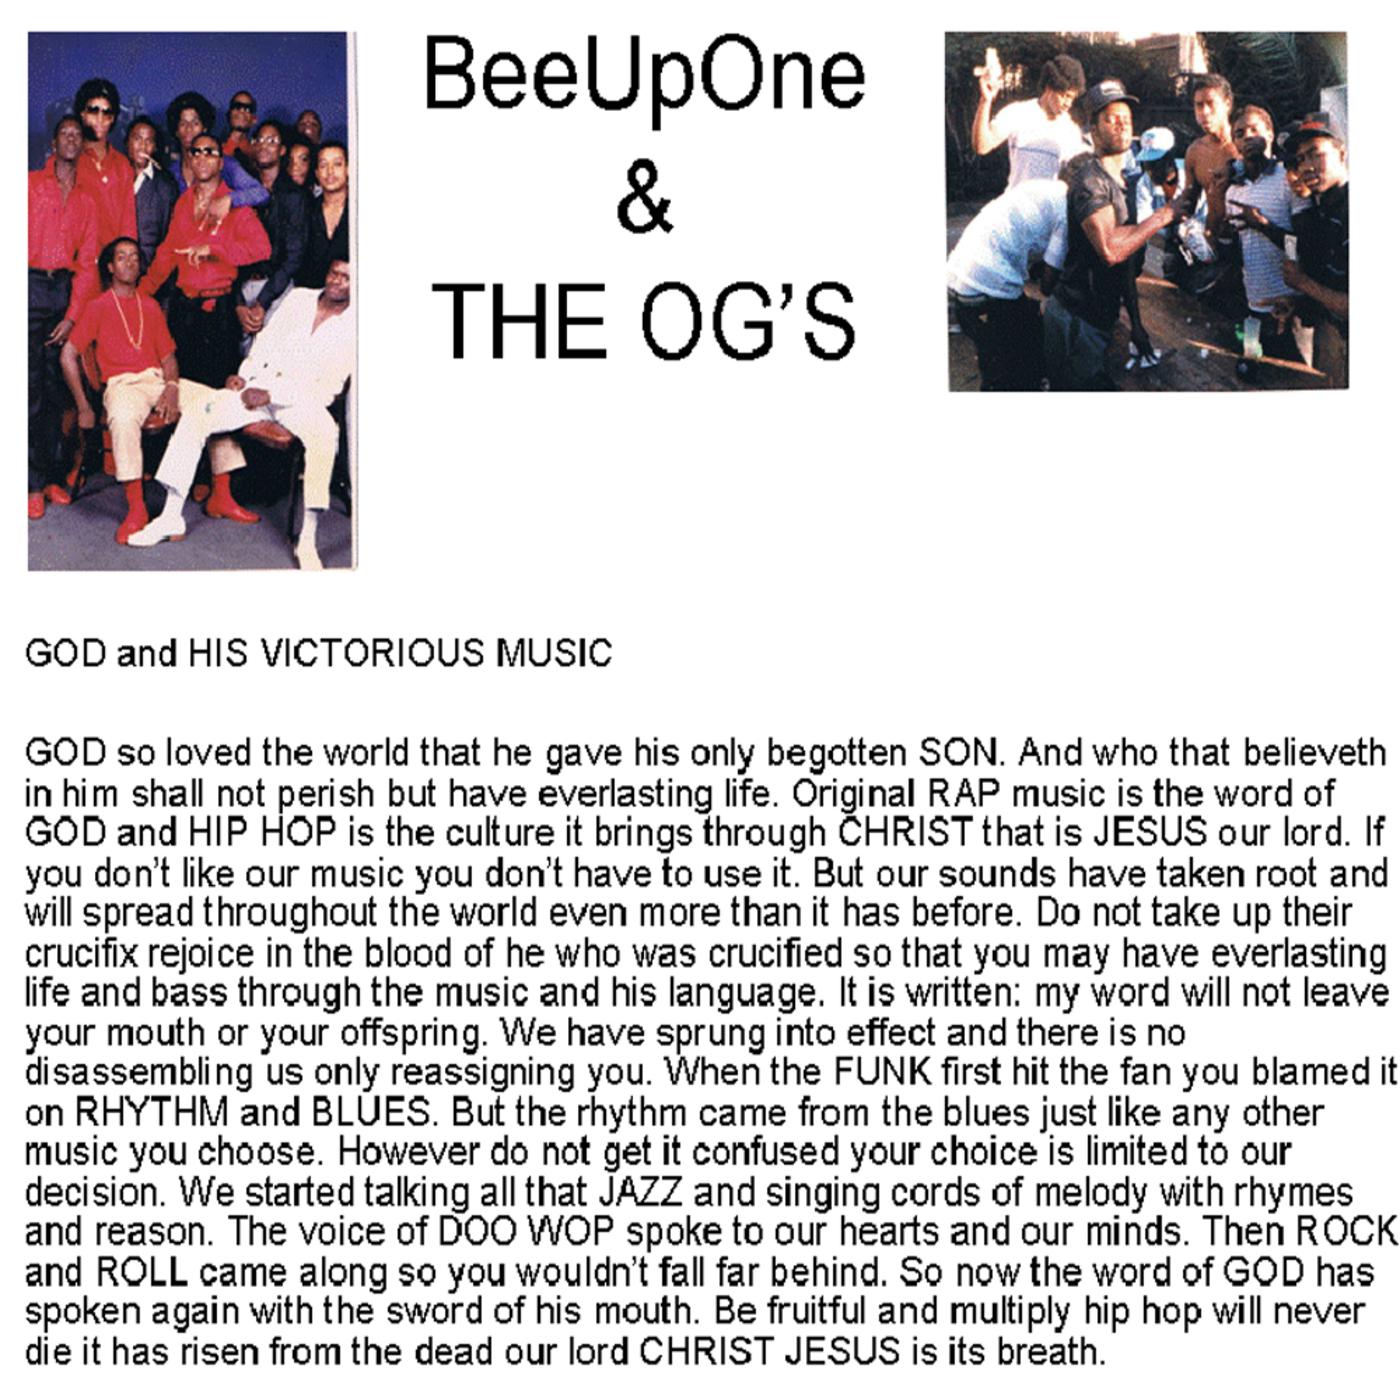 The Og's